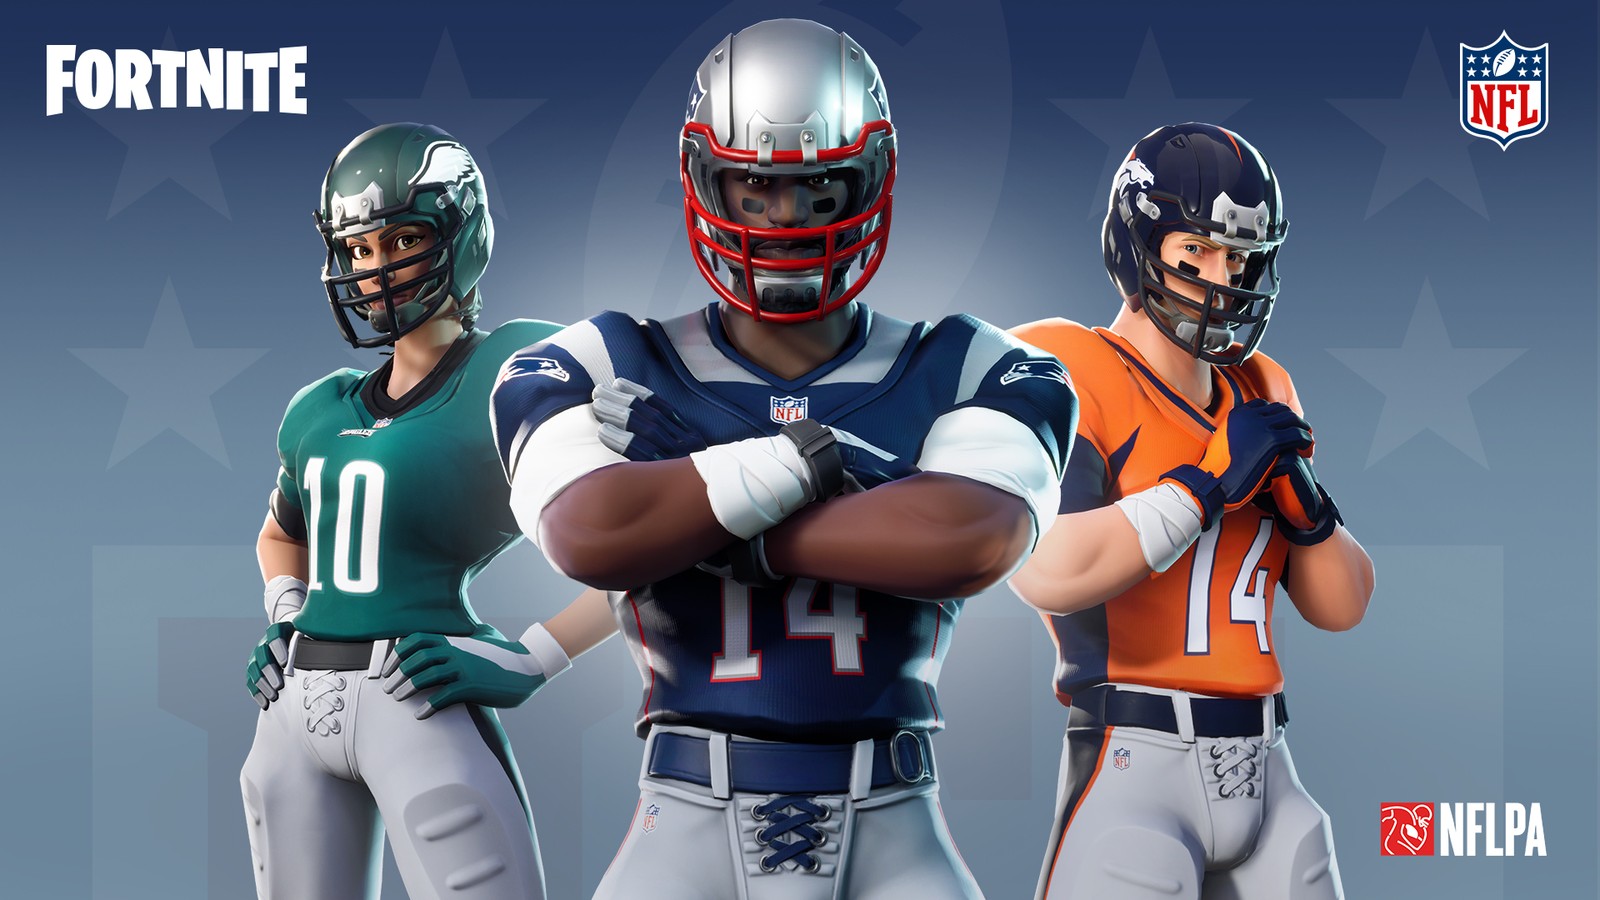 NFL fecha parceria com jogo Fortnite